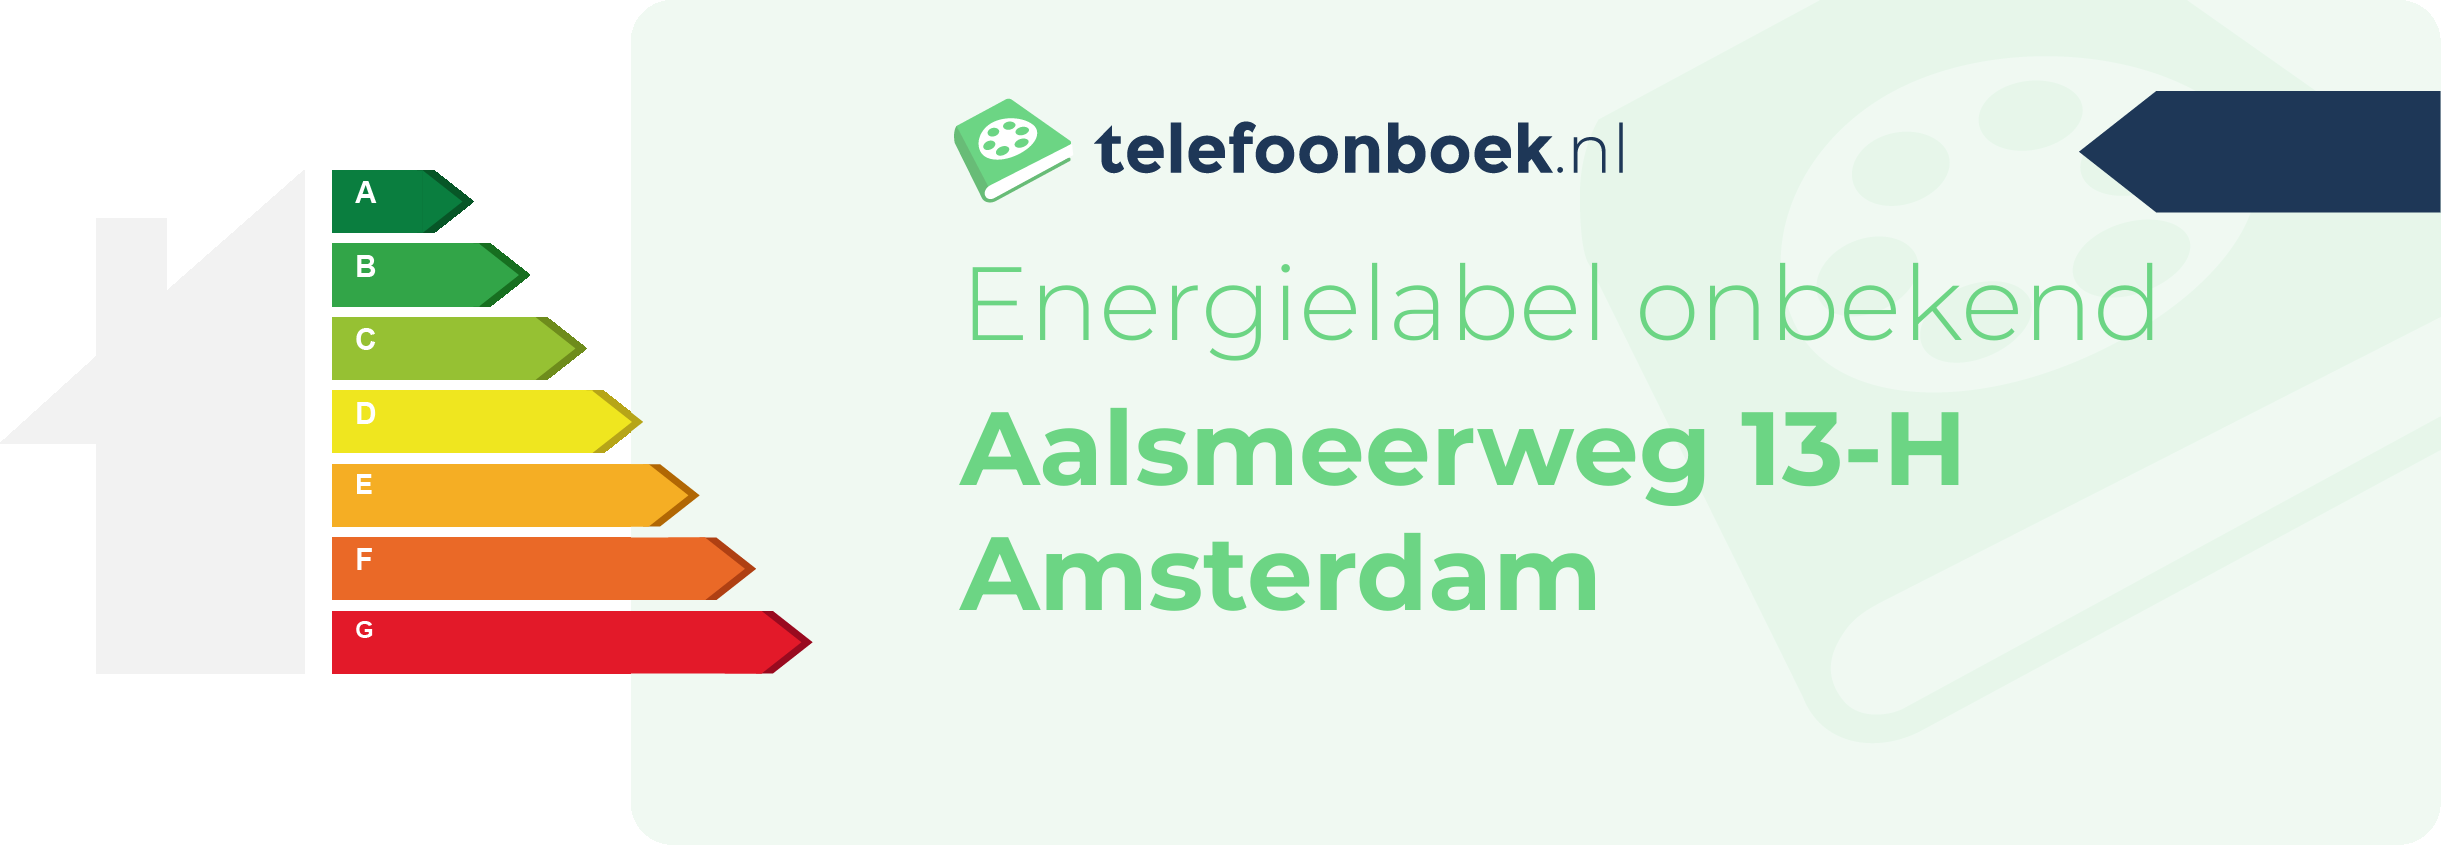 Energielabel Aalsmeerweg 13-H Amsterdam